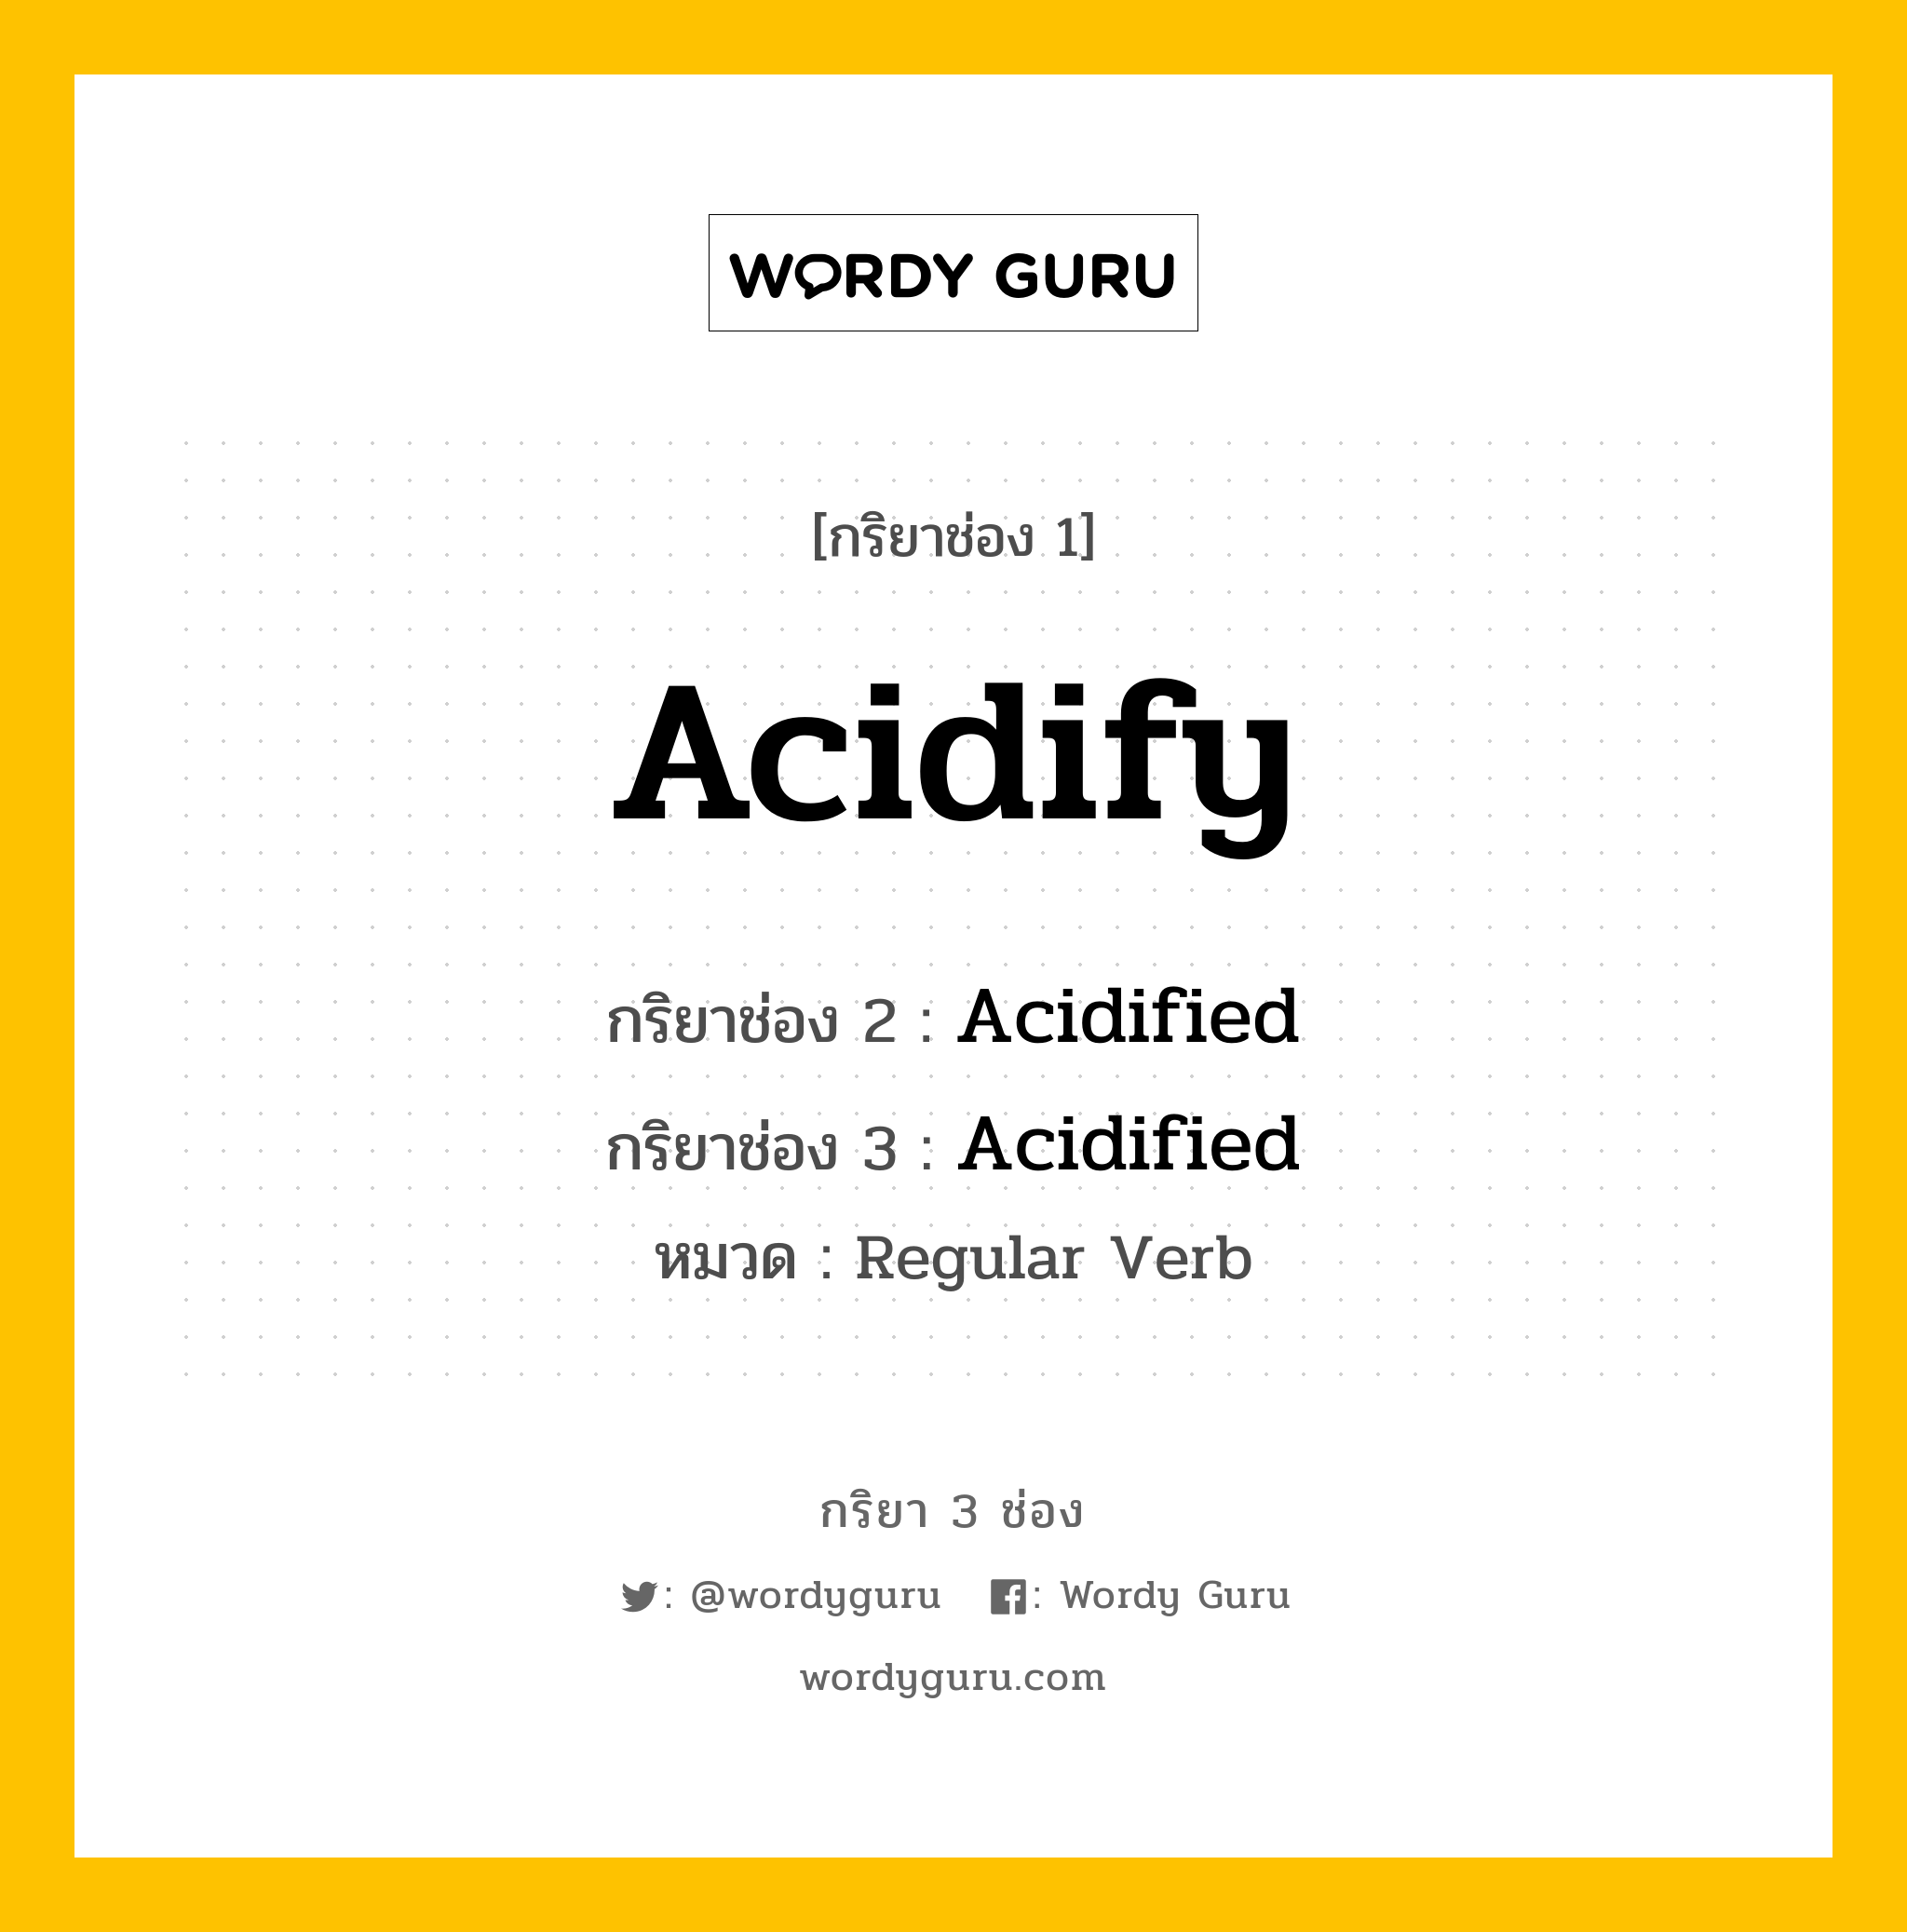 Acidify มีกริยา 3 ช่องอะไรบ้าง? คำศัพท์ในกลุ่มประเภท Regular Verb, กริยาช่อง 1 Acidify กริยาช่อง 2 Acidified กริยาช่อง 3 Acidified หมวด Regular Verb หมวด Regular Verb